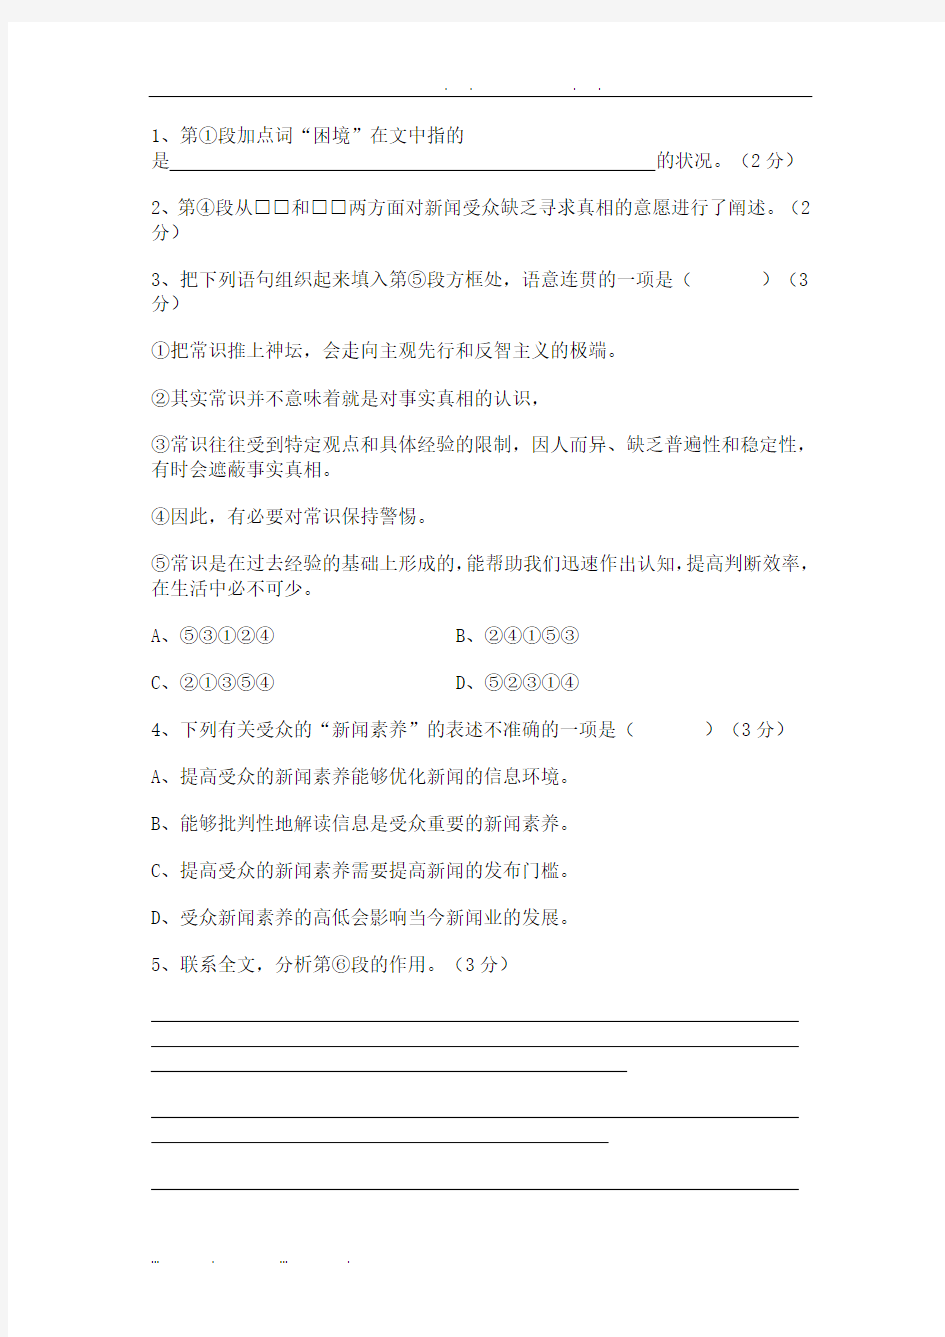 2014年高考真题——语文(上海卷)Word版-含答案